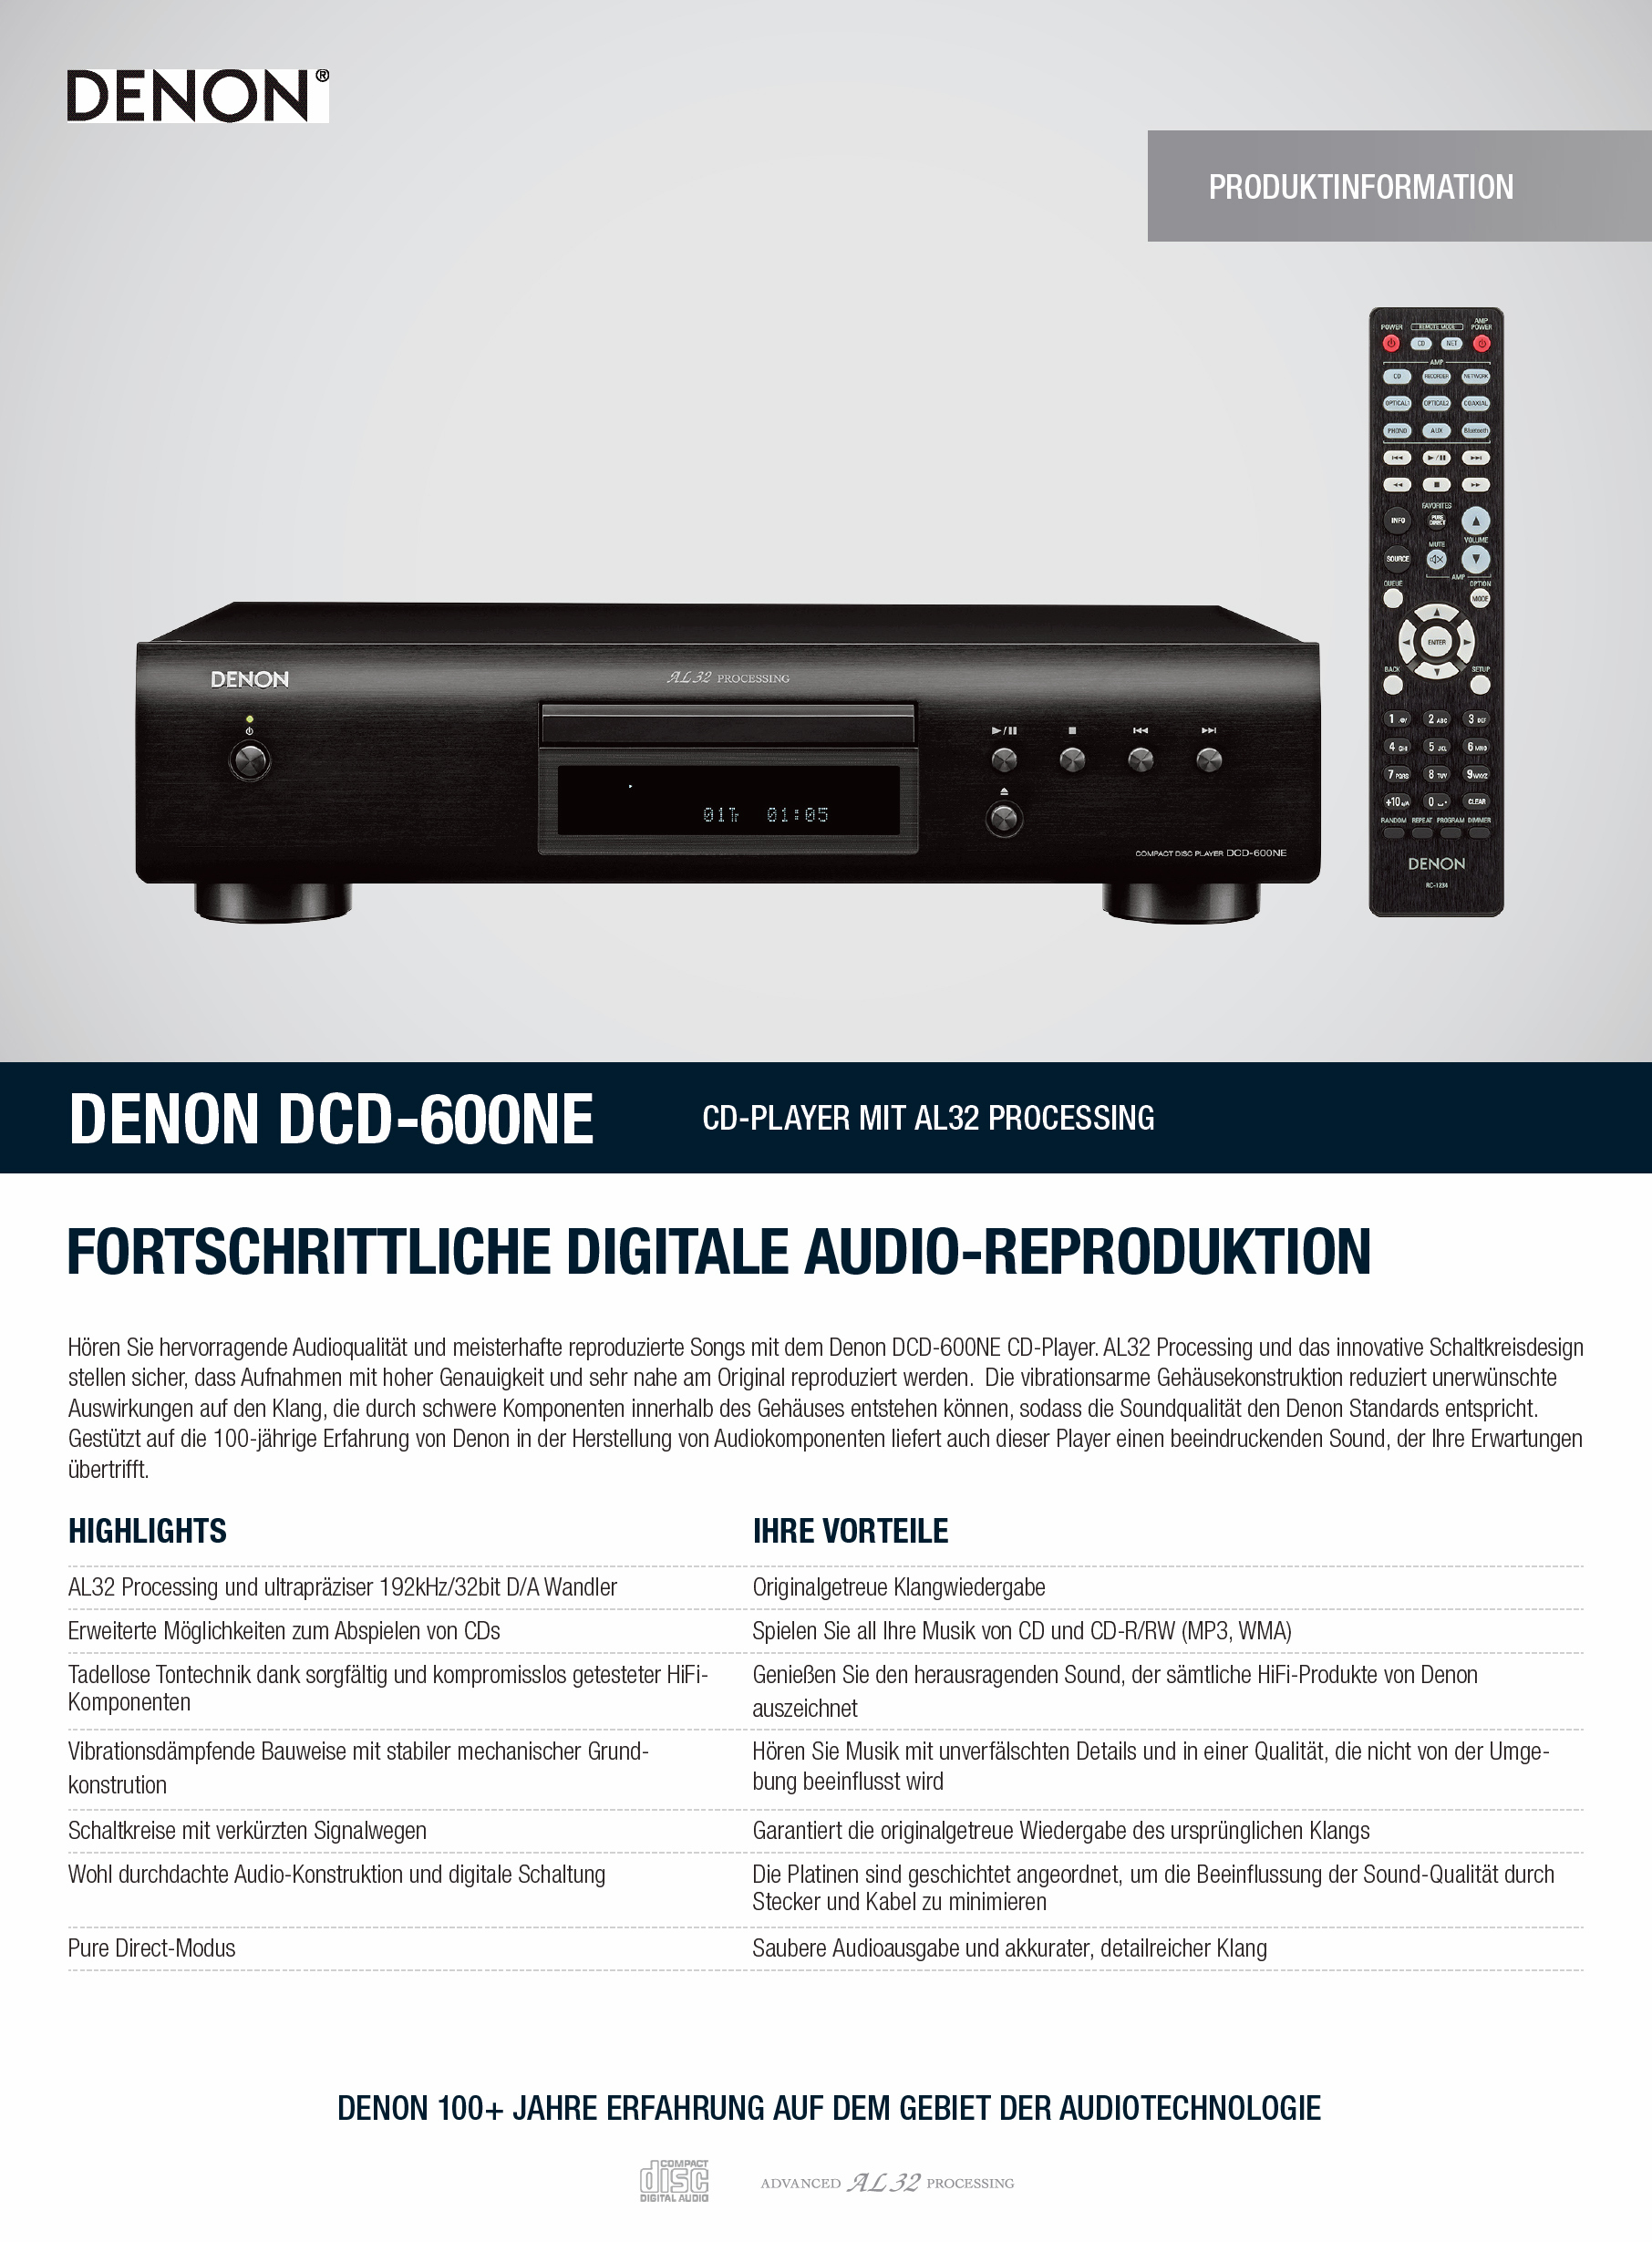 Denon DCD-600 NE-Prospekt-1.jpg